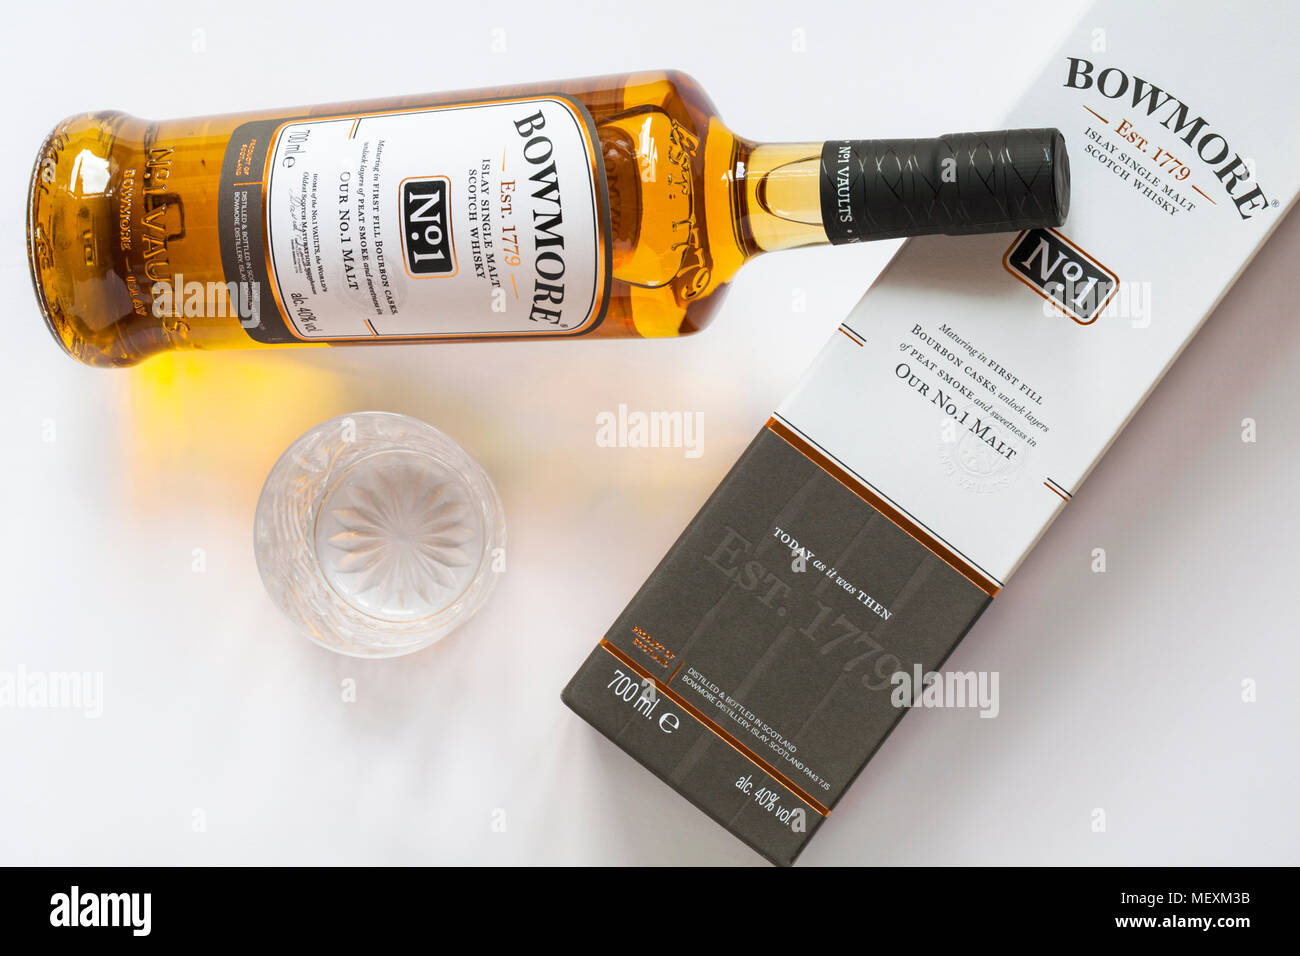 Bouteille de Bowmore Islay 1 pas de single malt scotch whisky sur boîte  avec verre vide situé sur fond blanc Photo Stock - Alamy